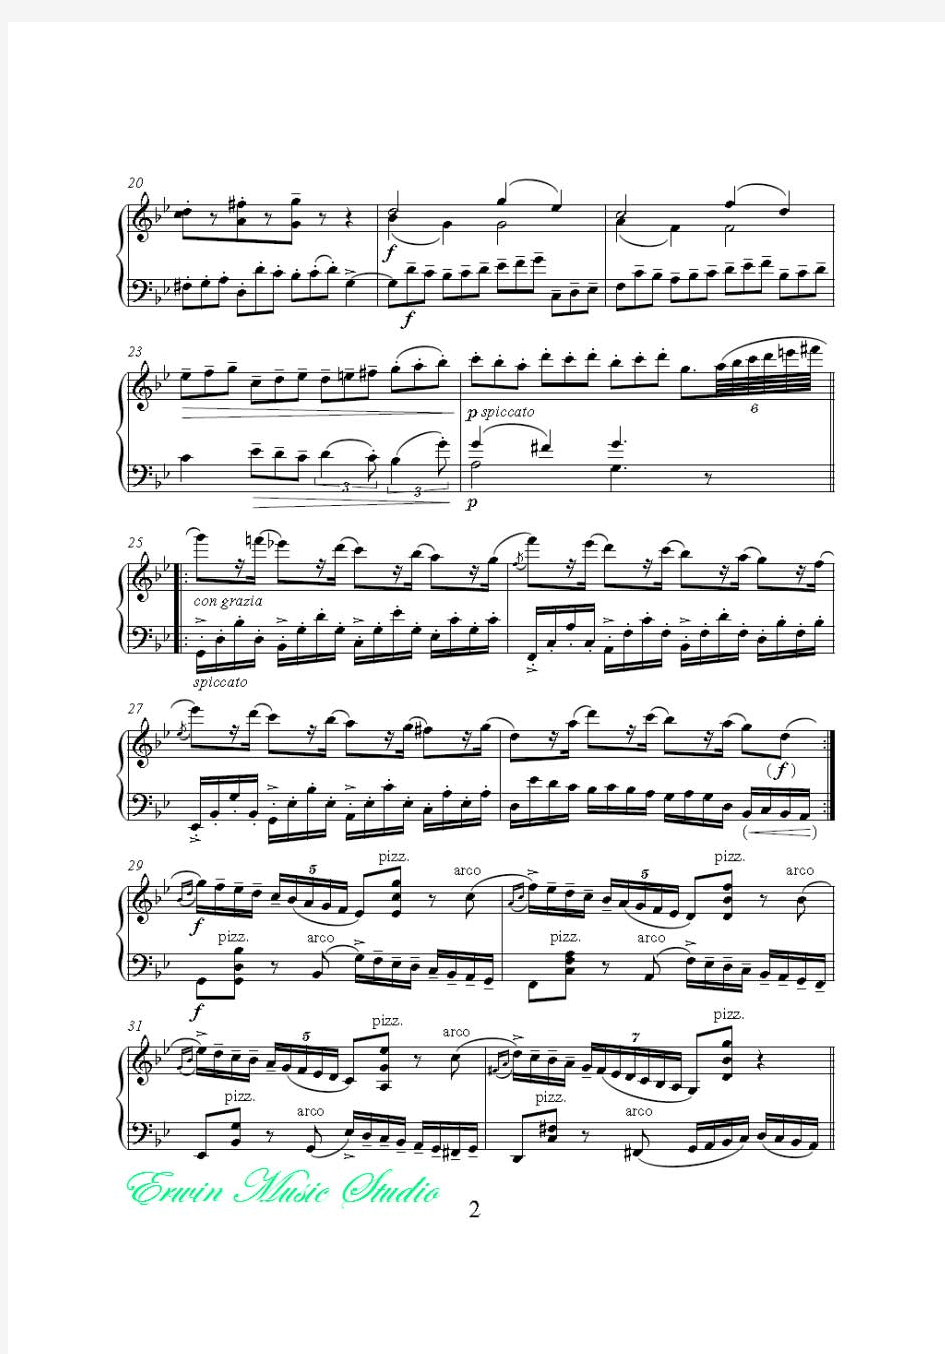 亨德尔 - J.Halvorsen 《Passacaglia 》小提琴曲谱+大提琴曲谱Va+Vc  G[1].F.Handel-J.Halvorsen - Pa